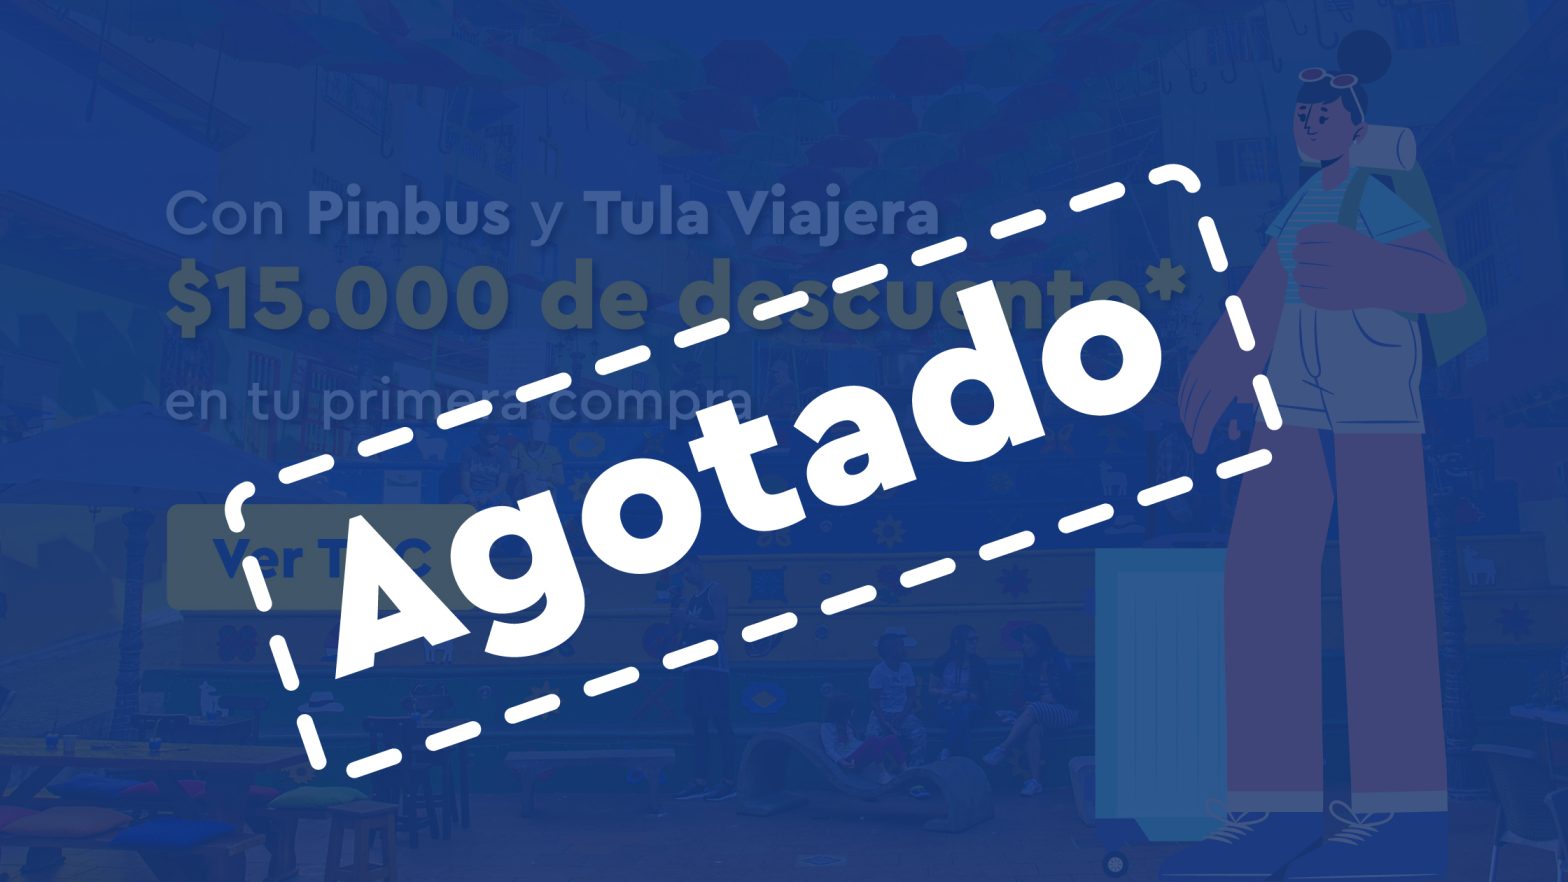 Pinbus | Obtén $15.000 de descuento* con Tula Viajera